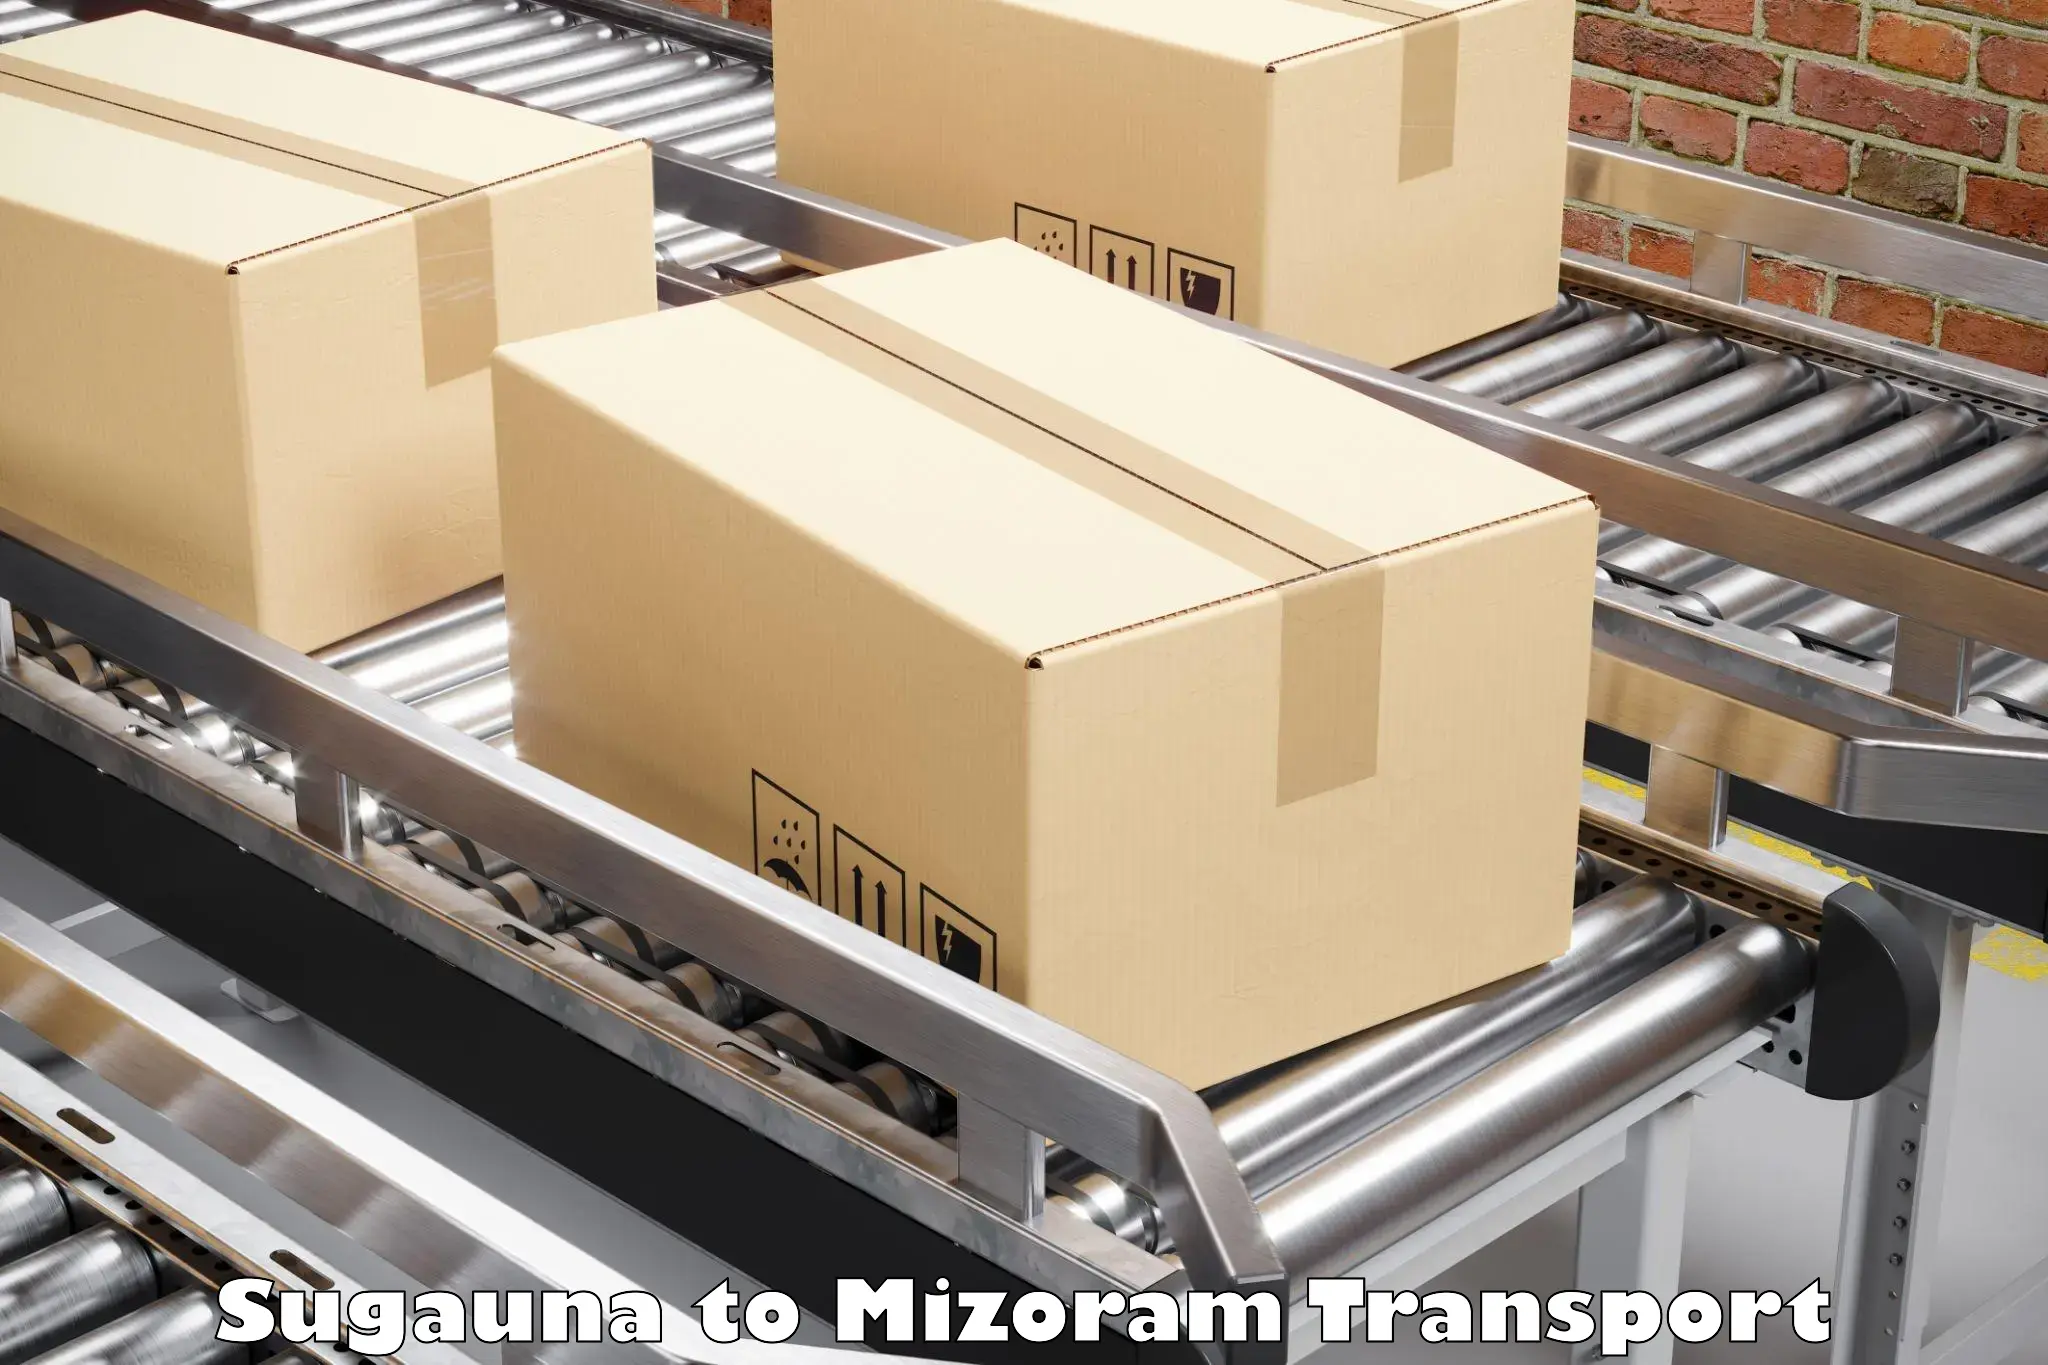 Goods delivery service Sugauna to Kolasib